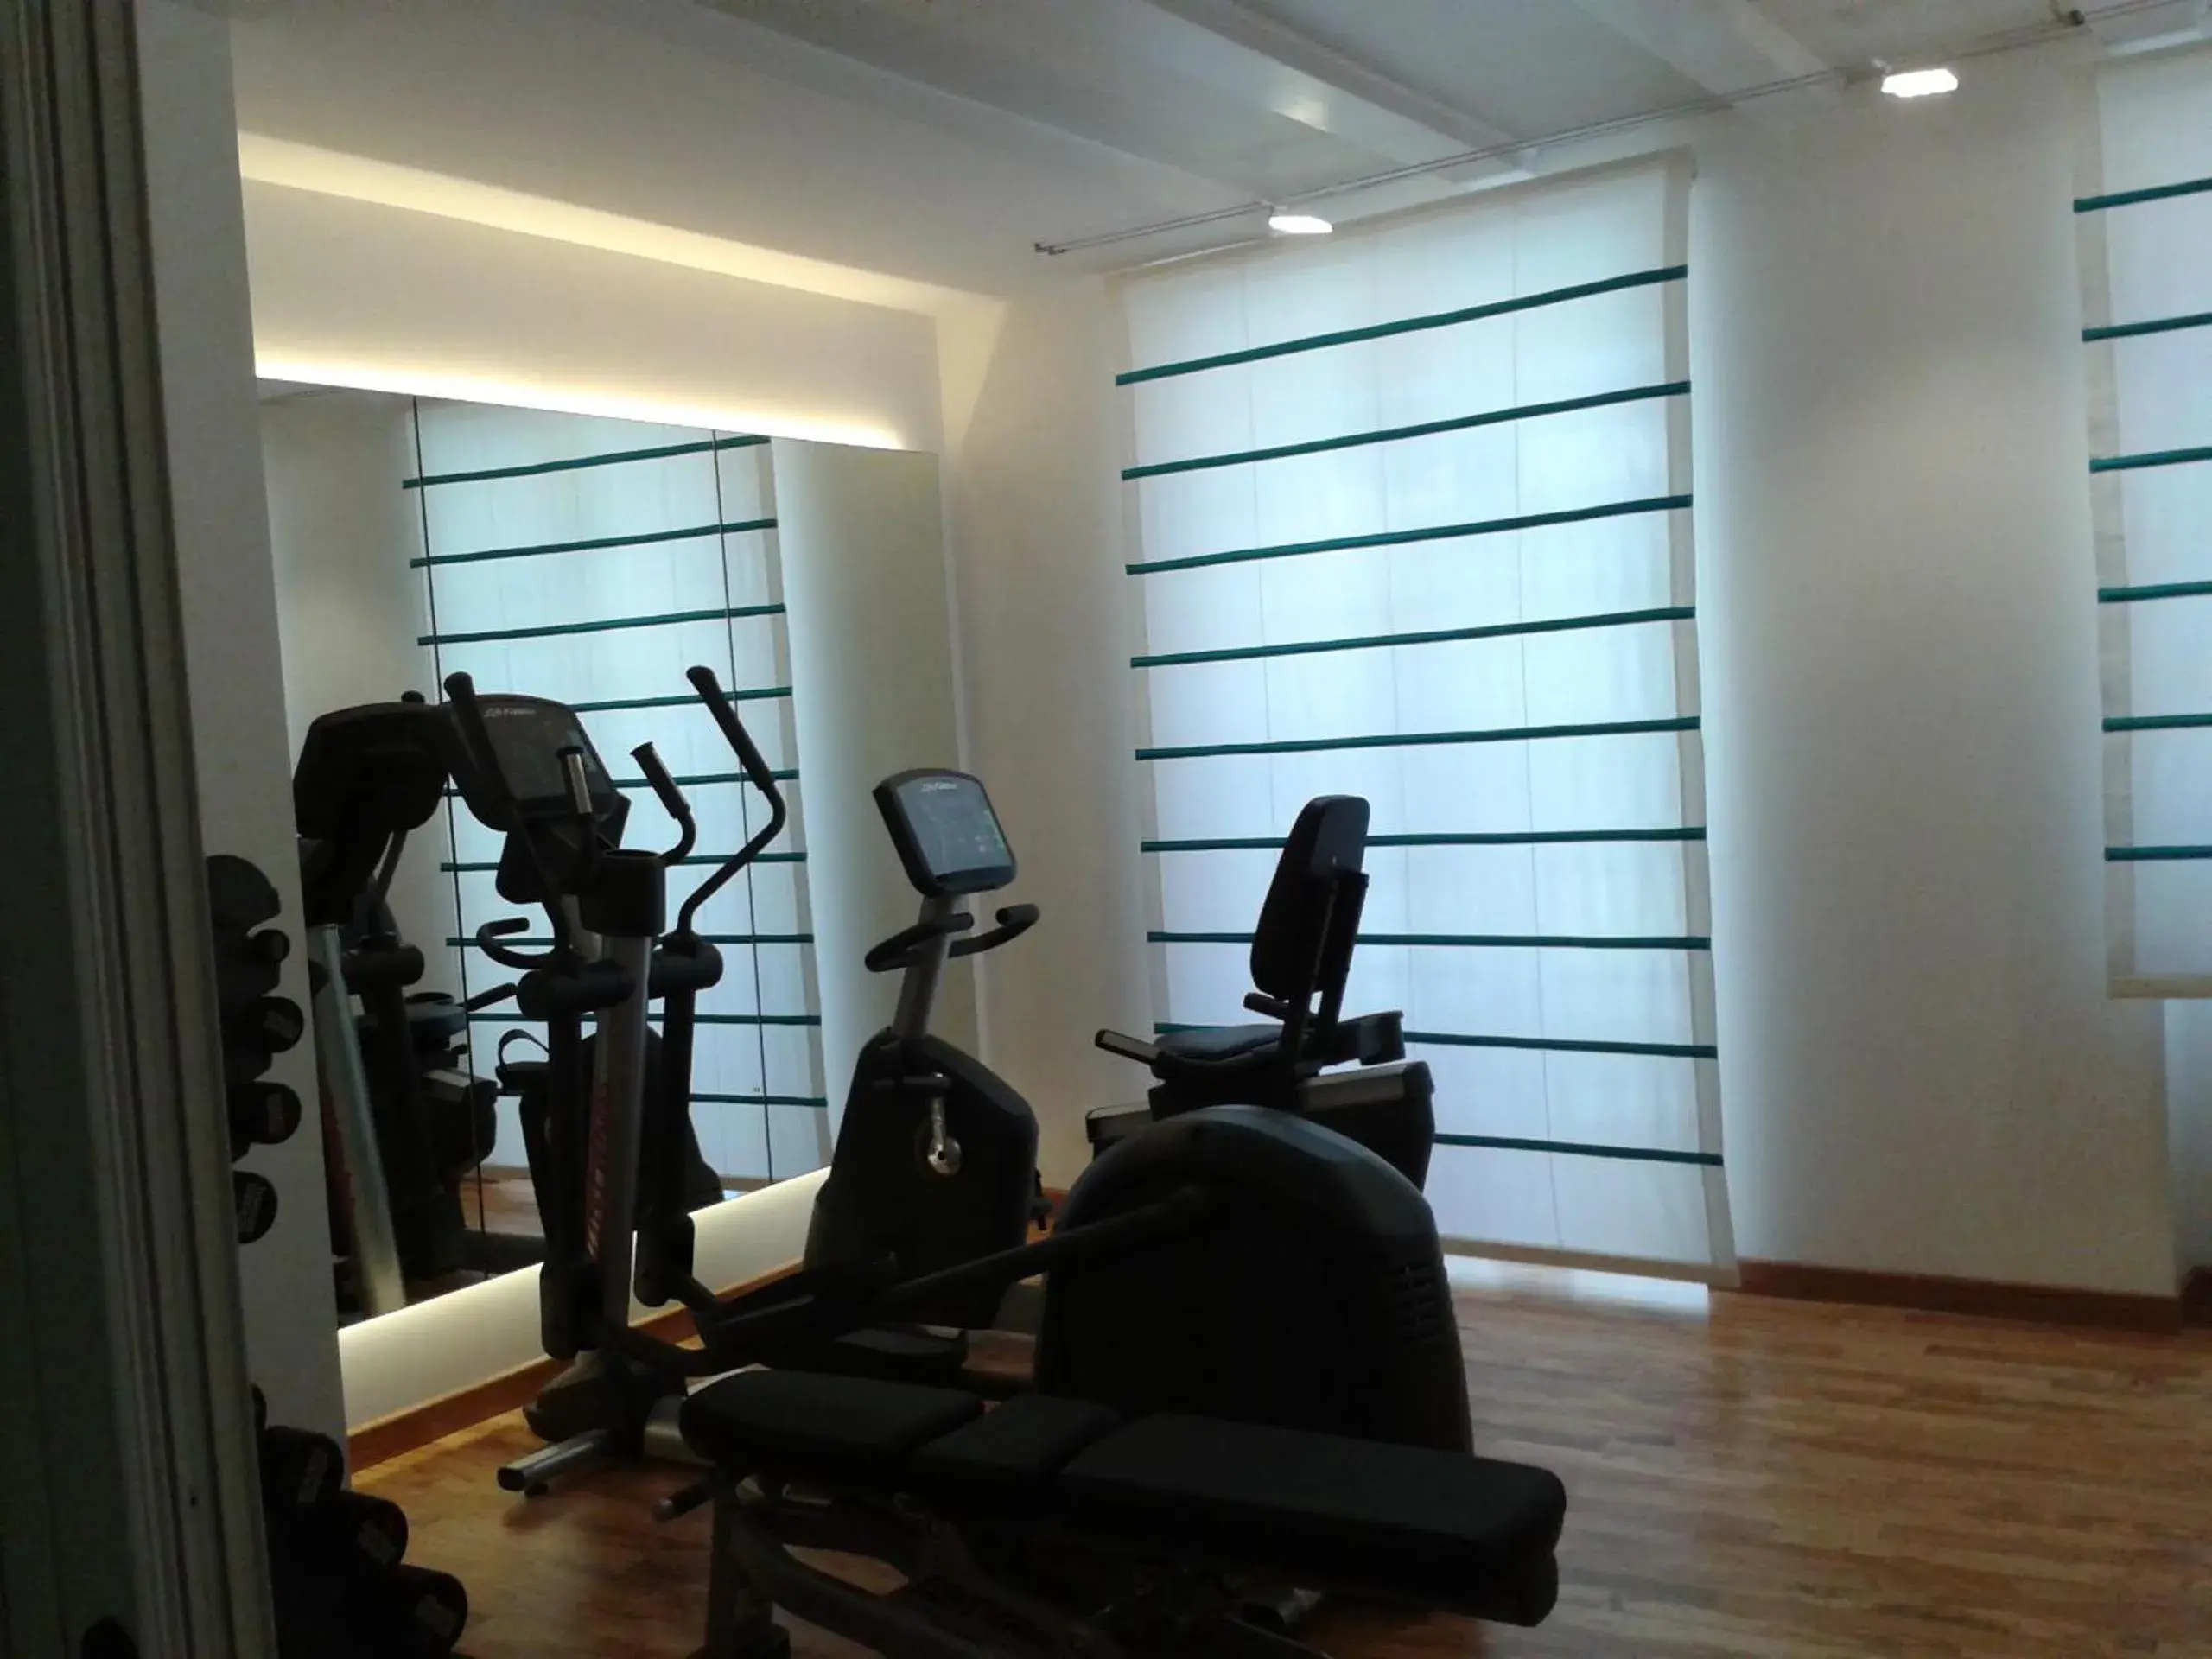 Fitness centre/facilities, Fitness Center/Facilities in Piccolo Grand Hotel